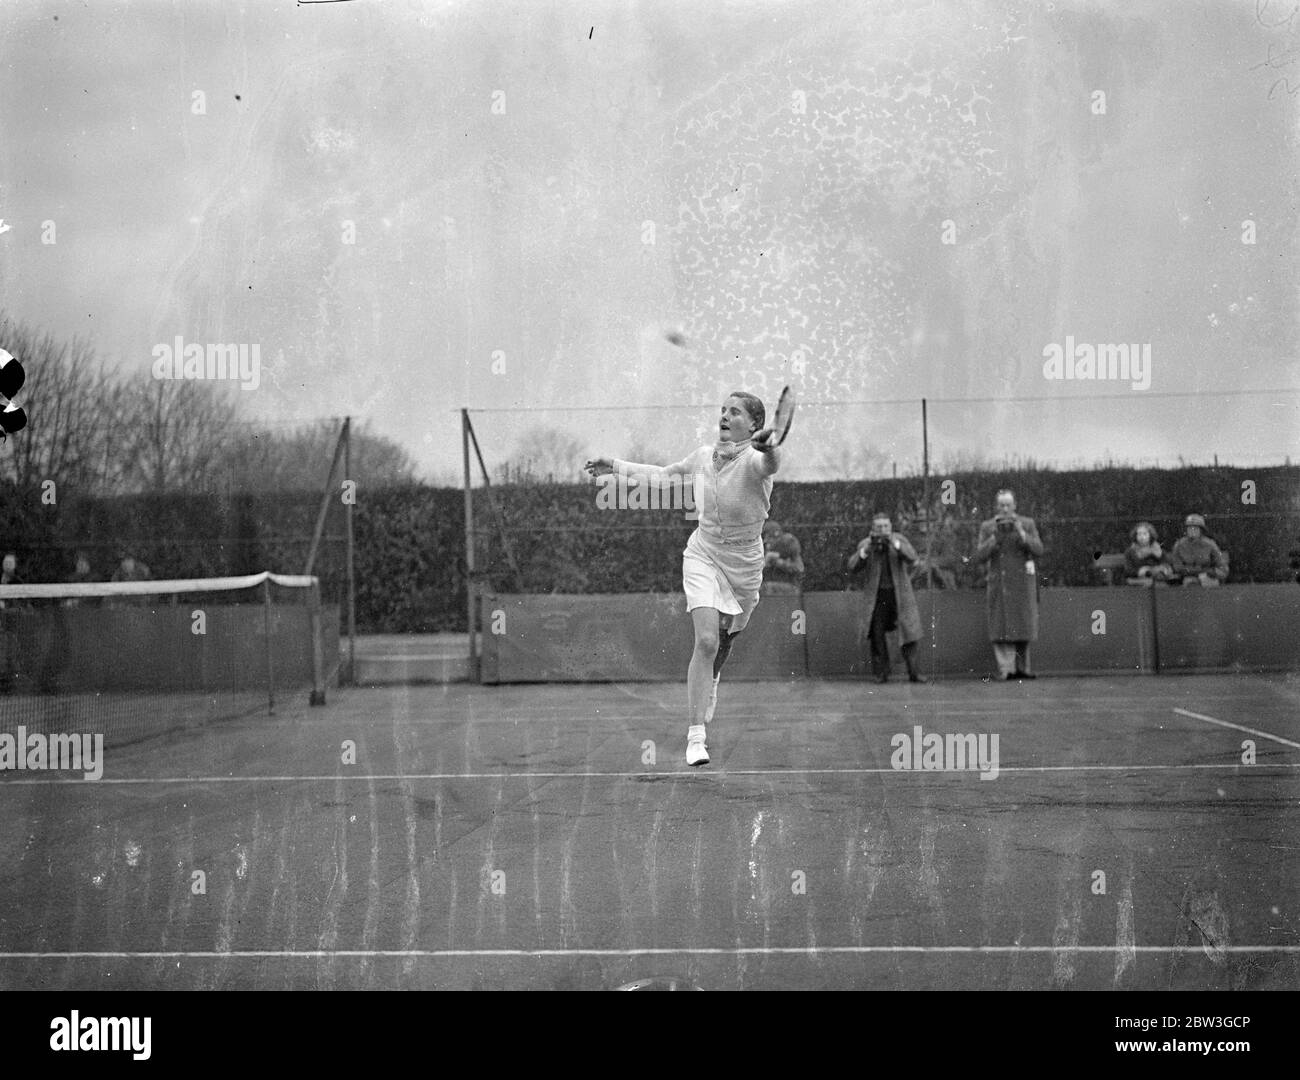 Mlle Stammers bat Miss Engel à Roehampton sans perdre la partie . Mlle Kay Stammers , Grande-Bretagne ' conjoint No1 joueuse de tennis , batte Miss M Engel 6 - 0 , 6 - 0 dans les championnats de Surrey Jard courts à Roehampton . Mlle Stammers là qui a fait sa première apparition sur un court de Londres cette saison portait un foulard attaché comme un cravat tout au long du match . Photos , Mlle Kay Stammers en action contre Mlle M Engel . 7 avril 1936 Banque D'Images